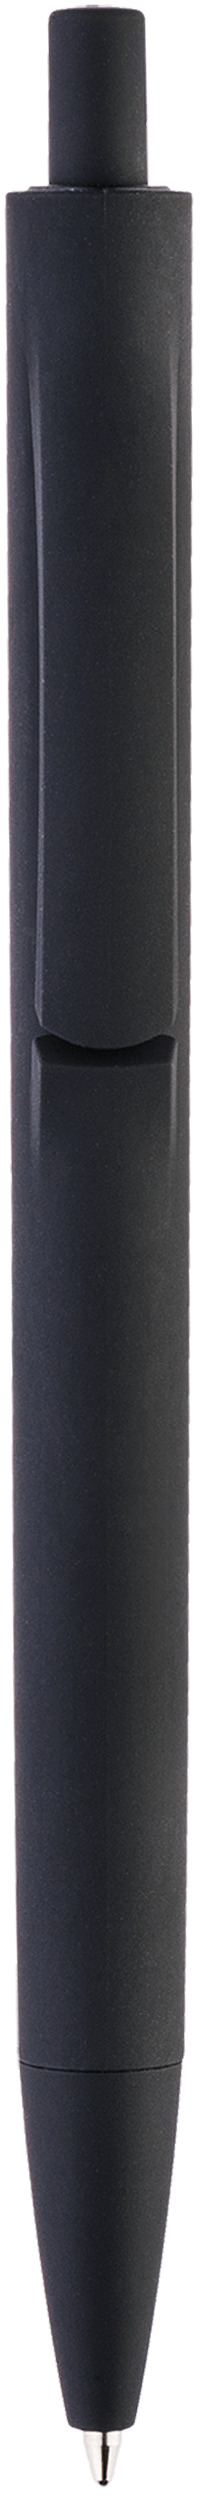 Ручка Igla Soft, чёрная, вид спереди